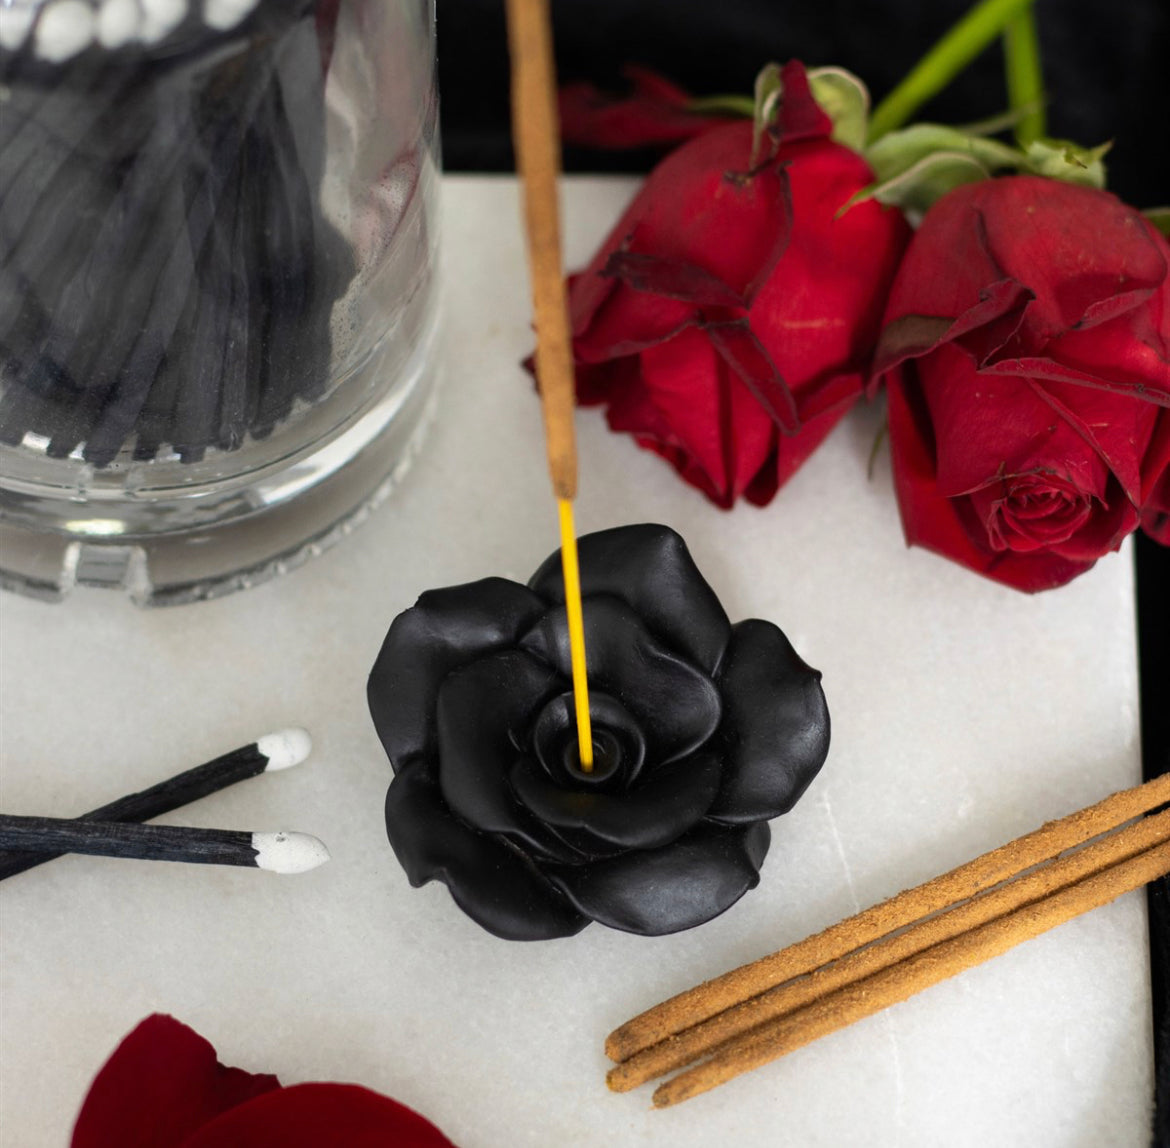 Black Rose Resin Incense Stick Holder